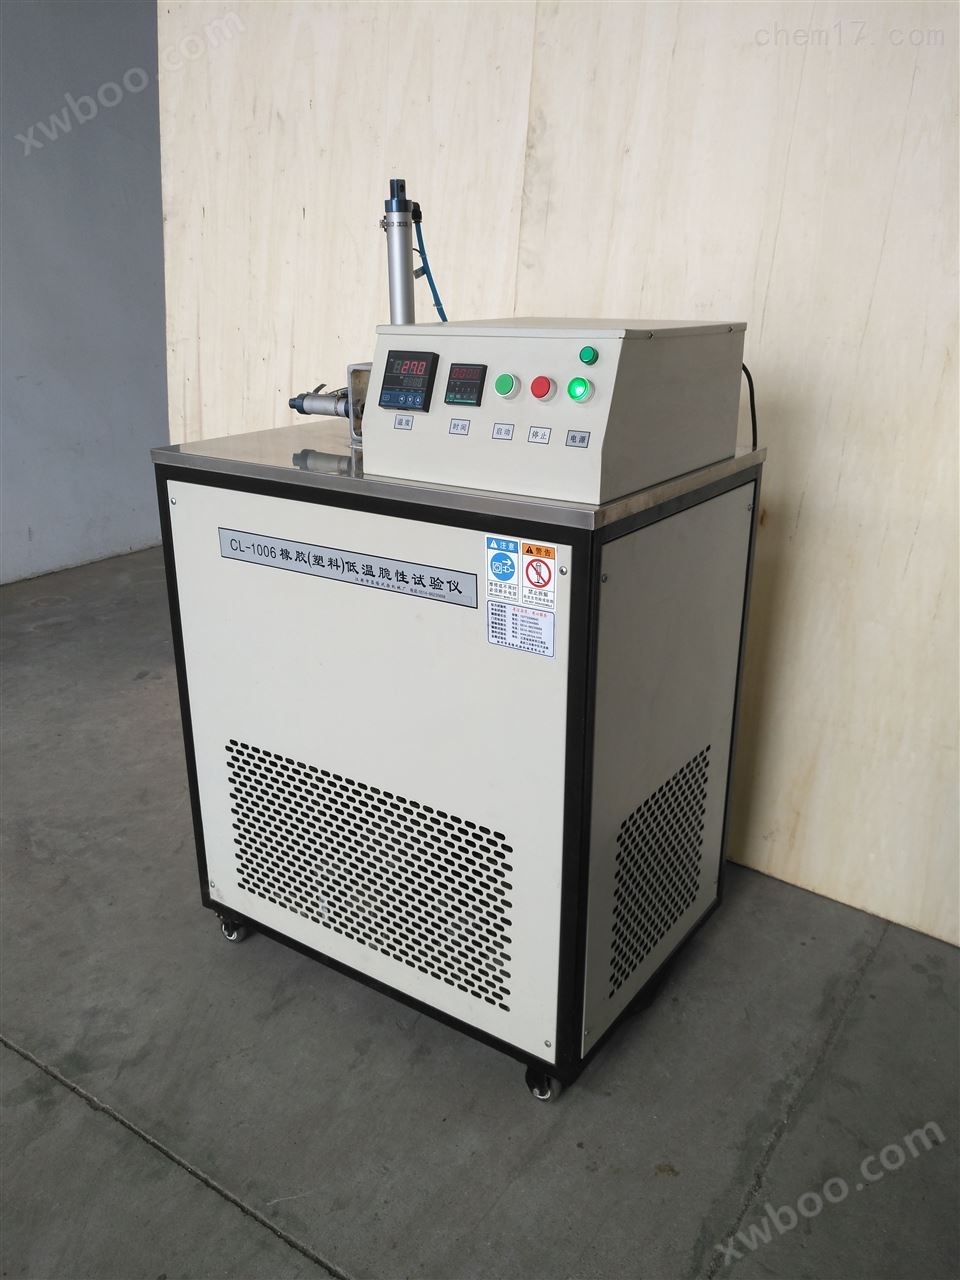 CL-1006橡胶低温脆性测定仪